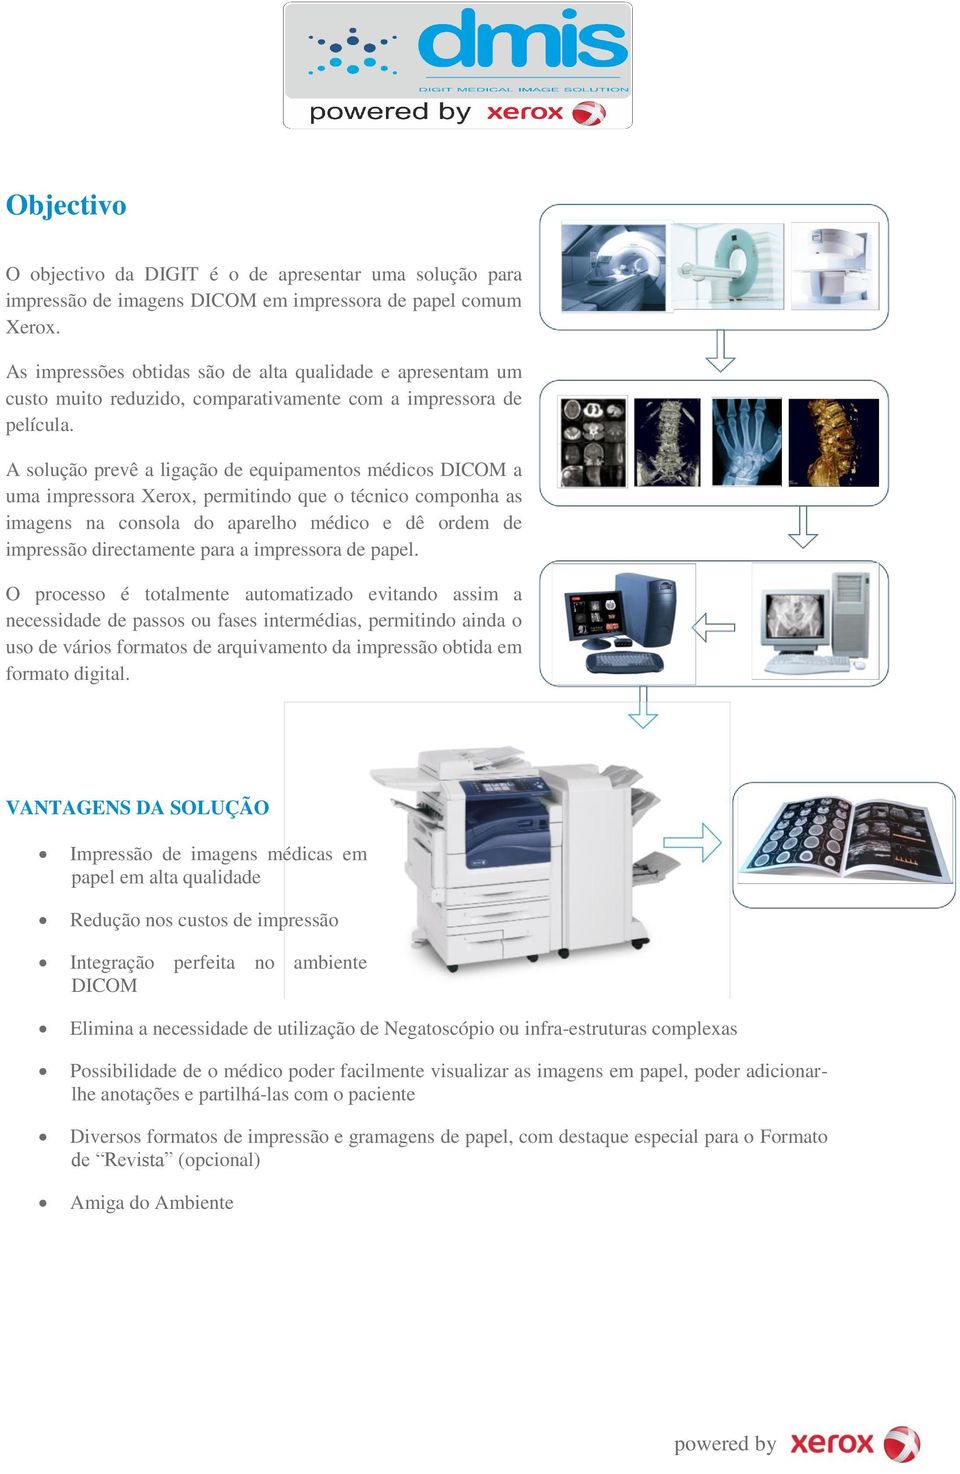 A solução prevê a ligação de equipamentos médicos DICOM a uma impressora Xerox, permitindo que o técnico componha as imagens na consola do aparelho médico e dê ordem de impressão directamente para a